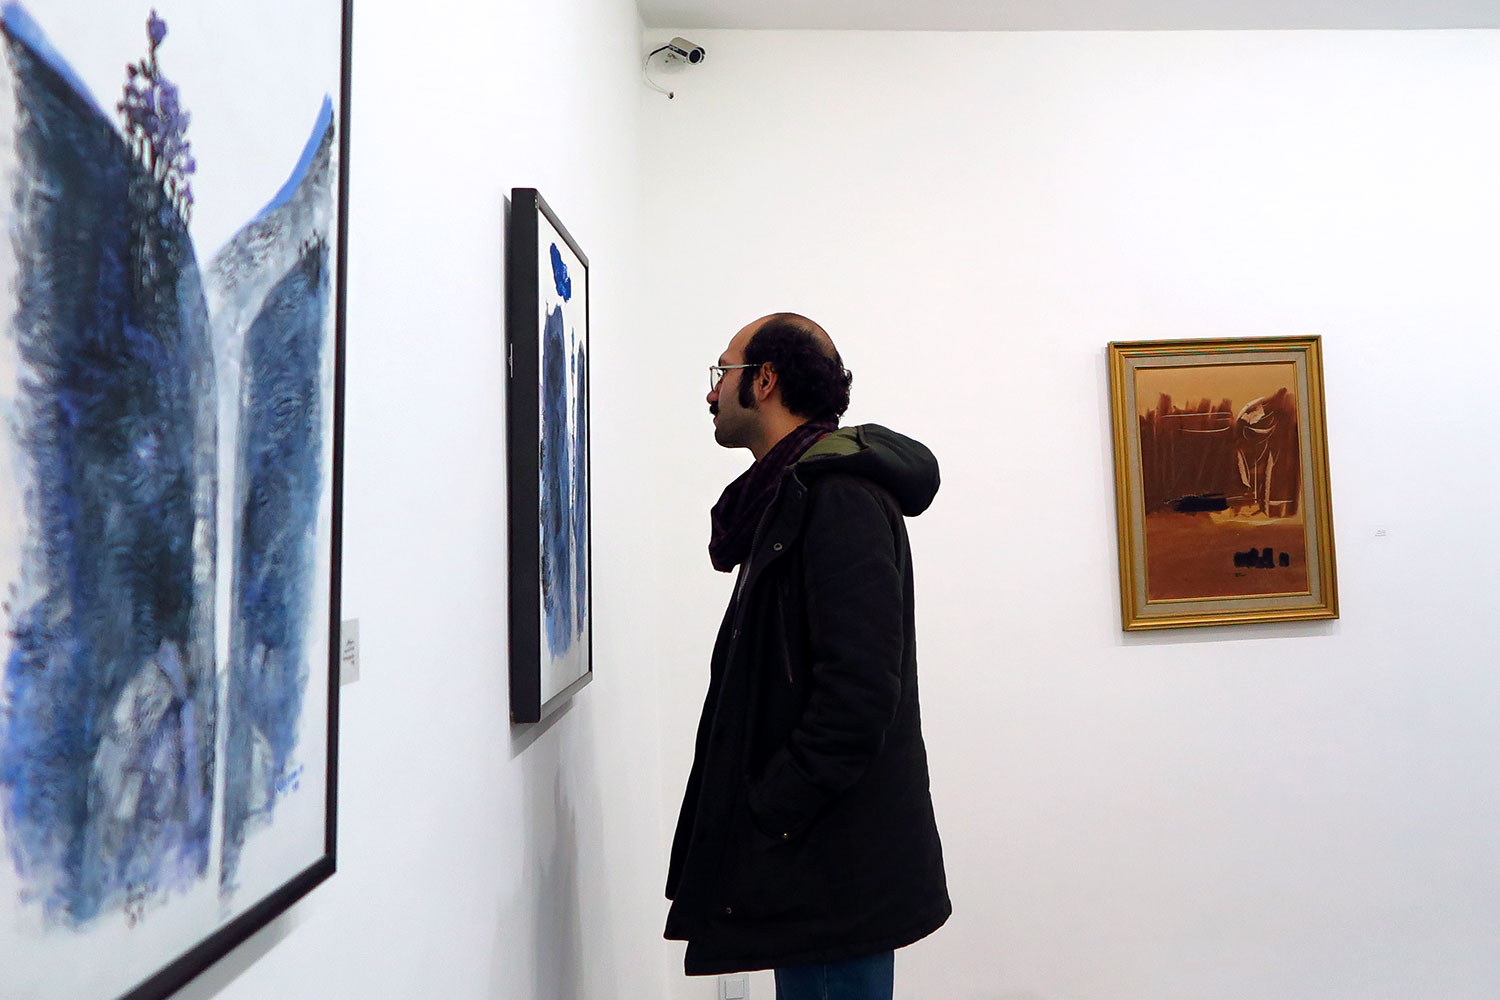  نمایشگاه نقاشی نوگرای ایران در گالری ماه مهر